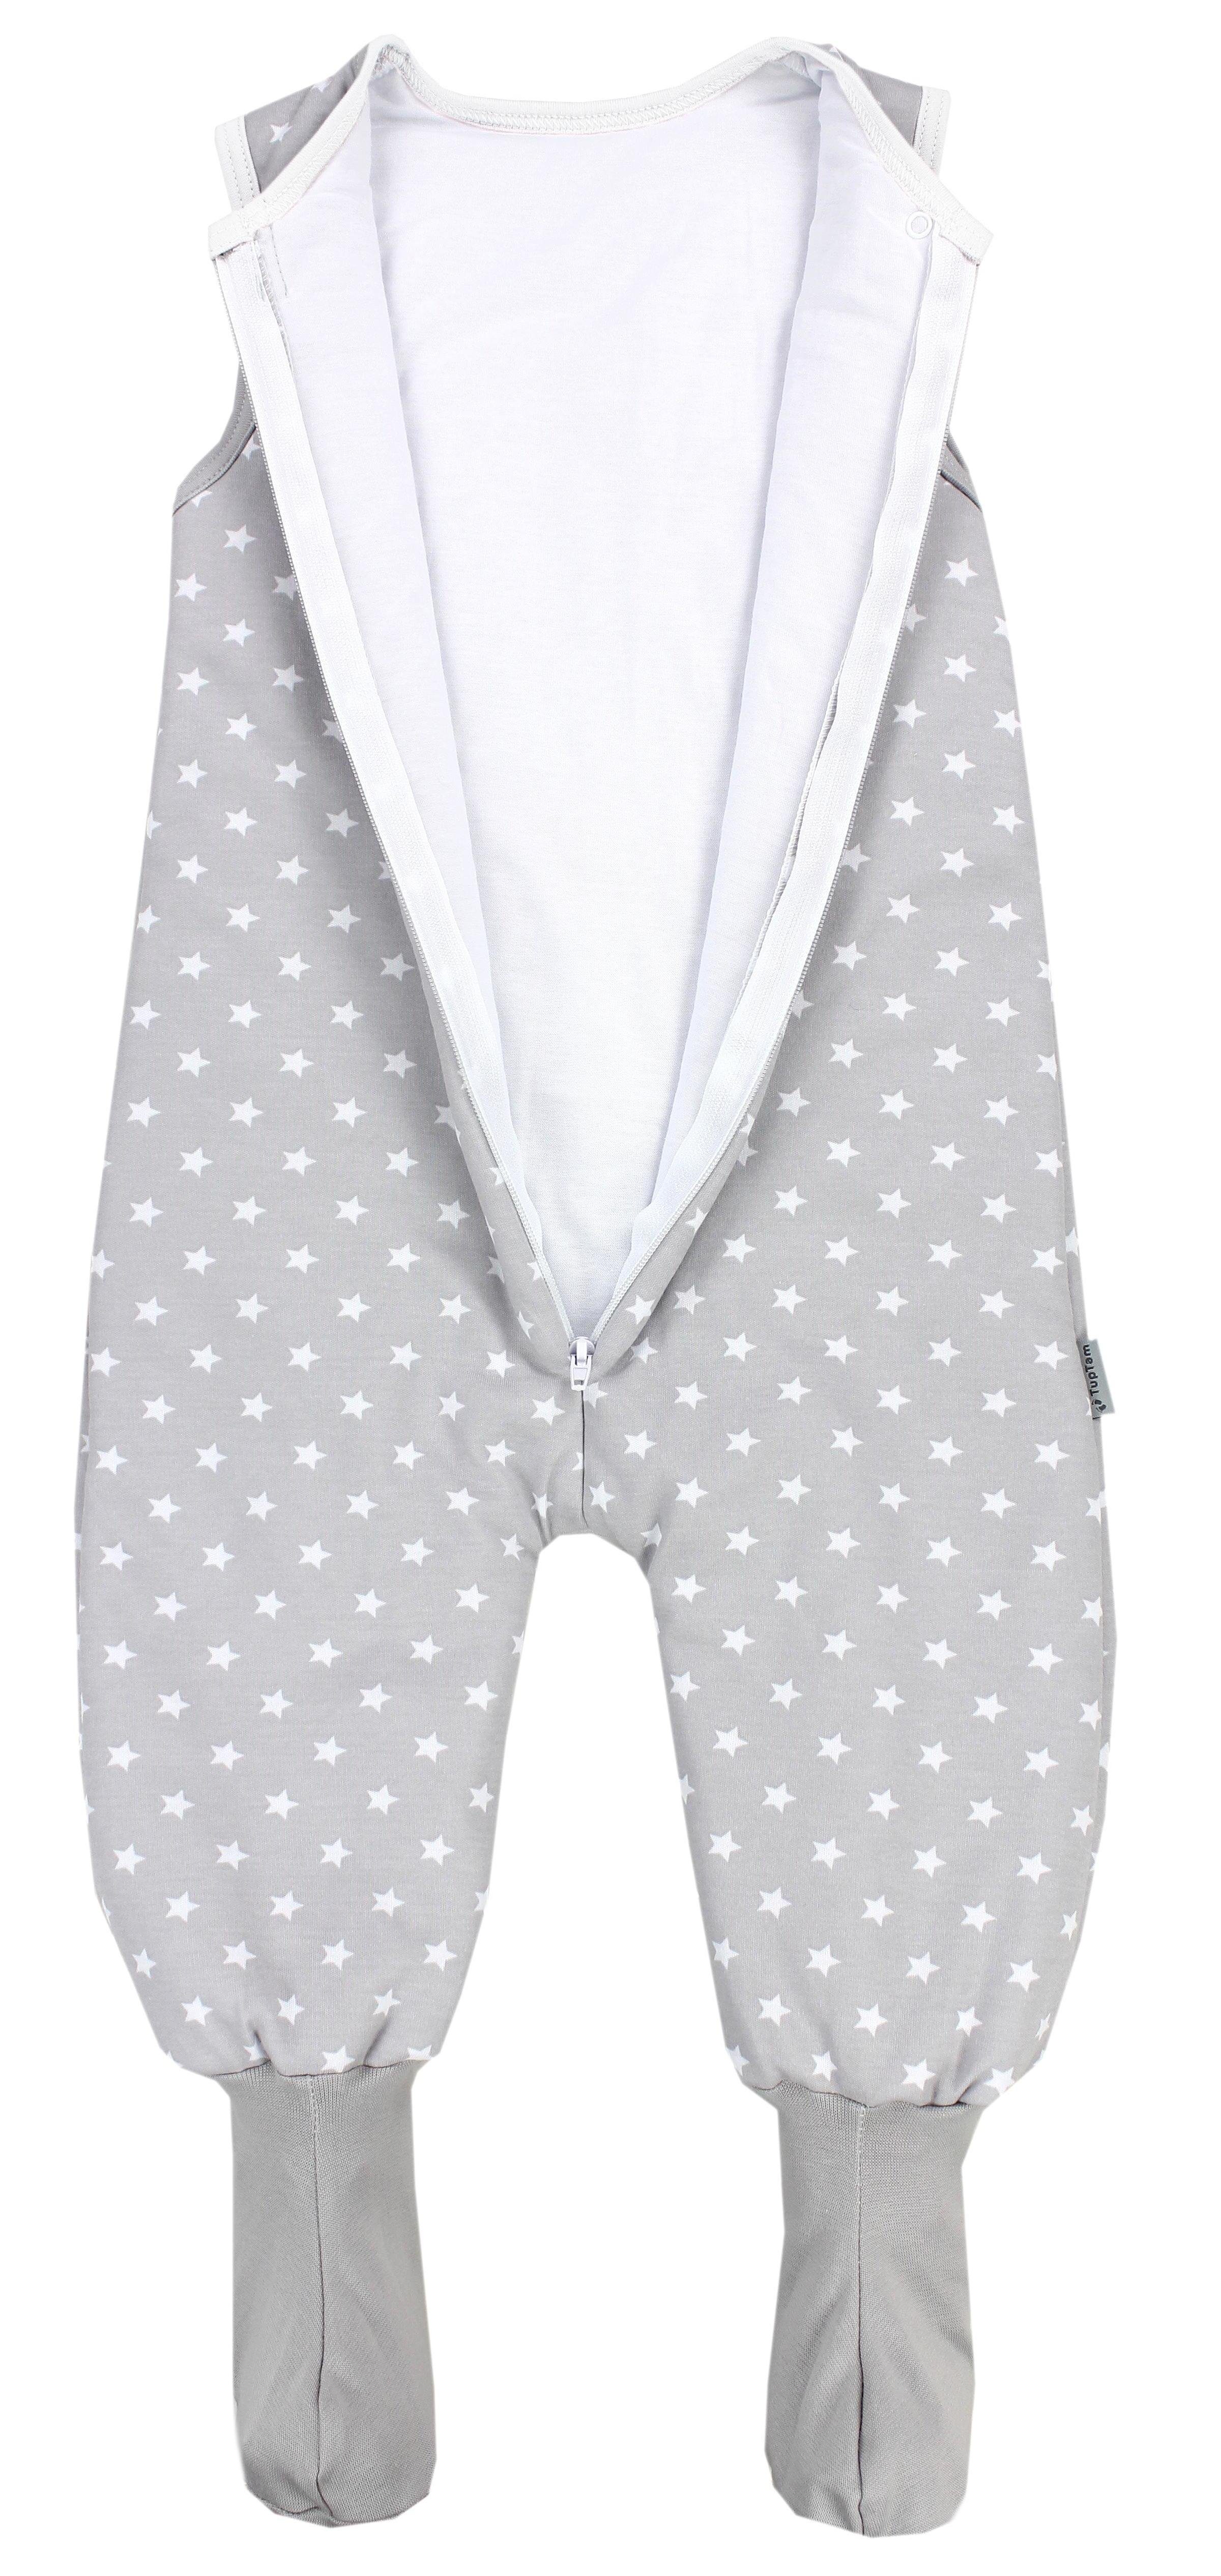 TupTam Babyschlafsack Winterschlafsack mit Beinen 2.5 / Grau TOG zertifiziert, und Füßen Sterne Weiß OEKO-TEX